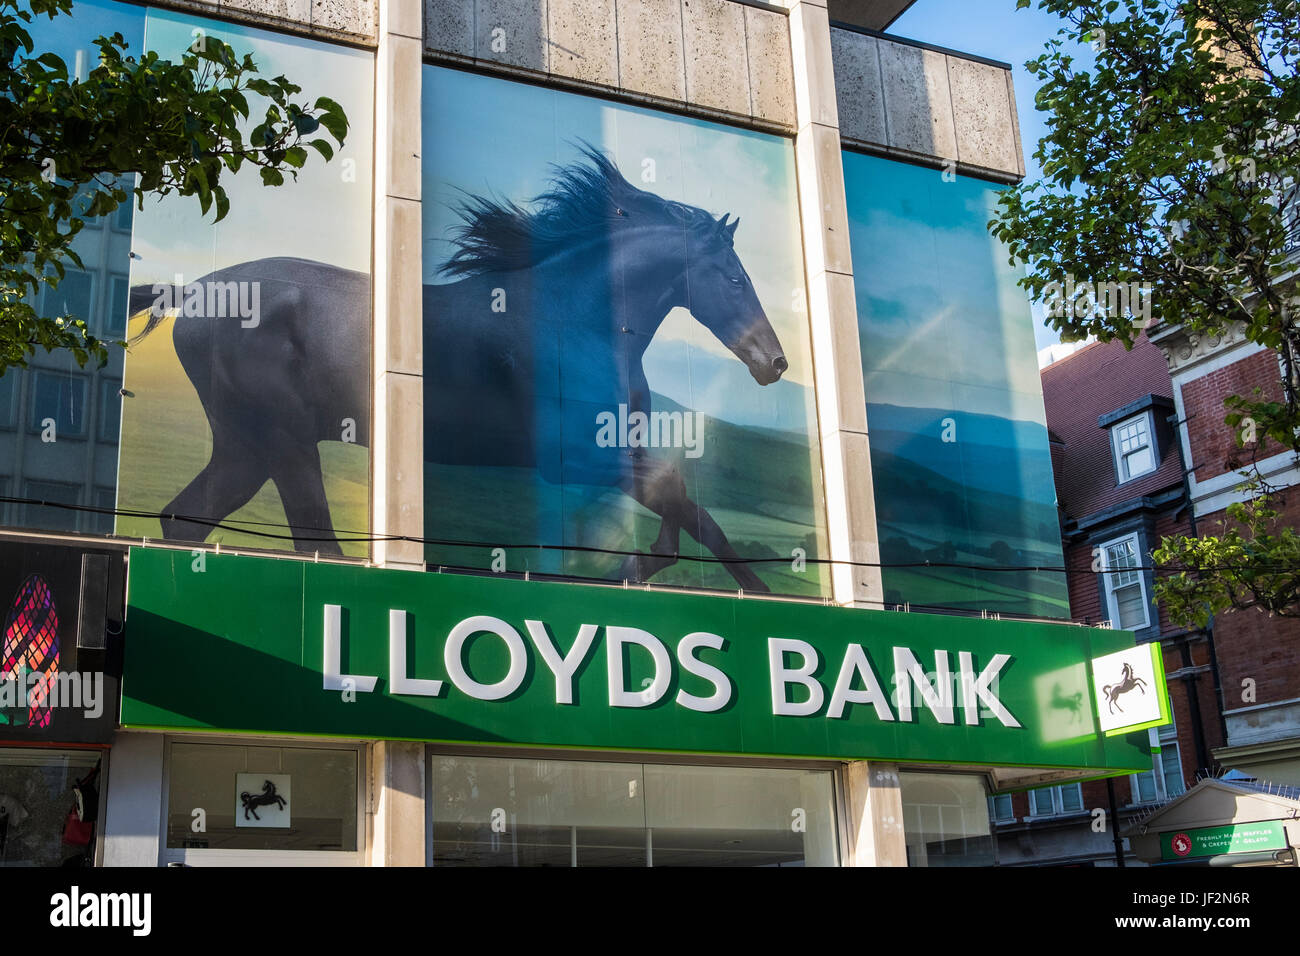 La banque Lloyds avec photo de cheval noir au-dessus de la branche sur Oxford Street, Londres, Angleterre, Royaume-Uni Banque D'Images